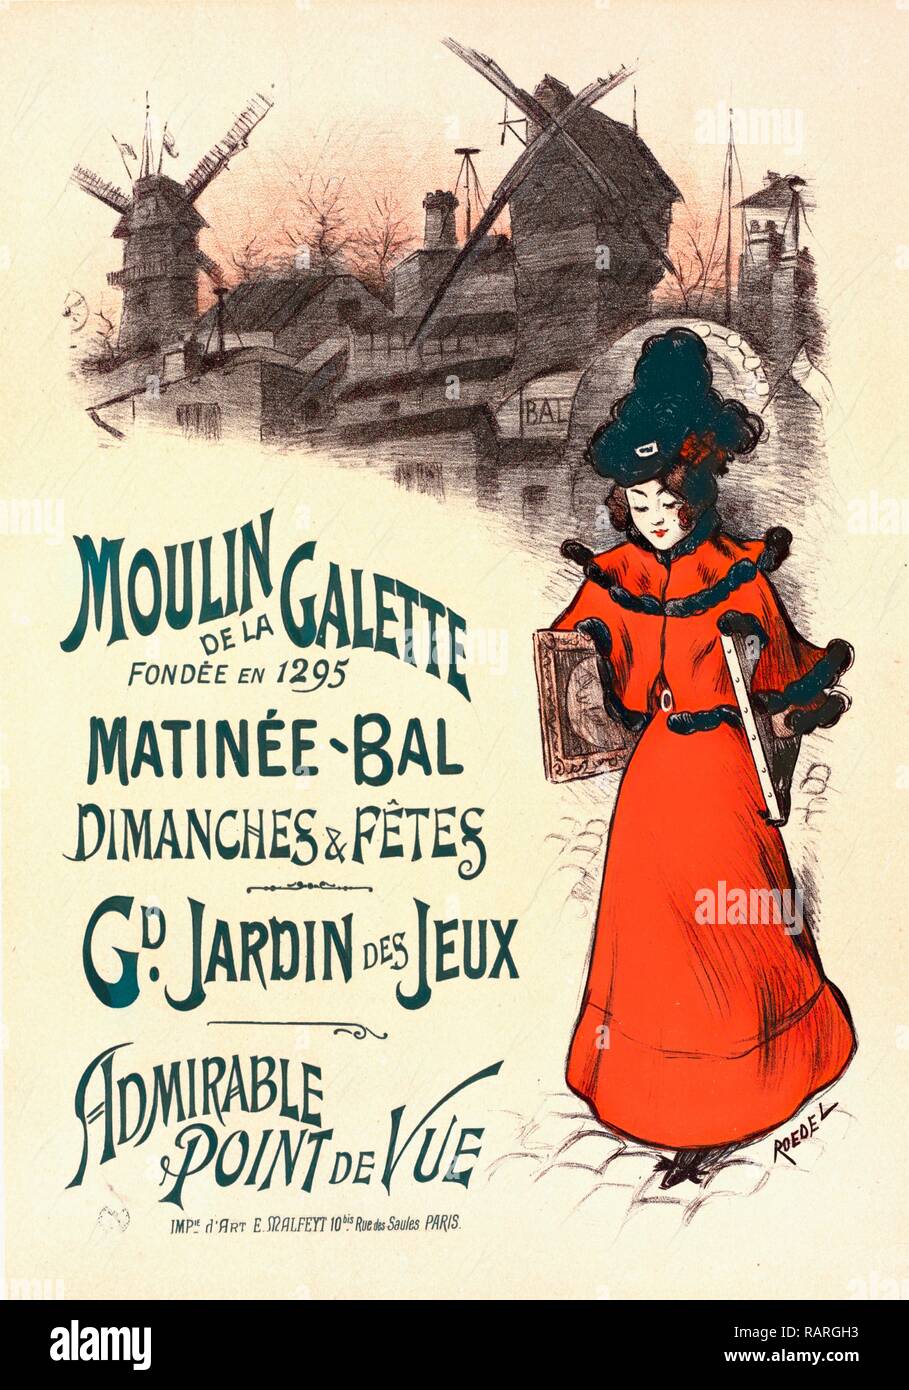 Affiche pour le Moulin de la galette. Auguste Roedel, 1859 -1900, illustrateur, affichiste, caricaturiste repensé Banque D'Images